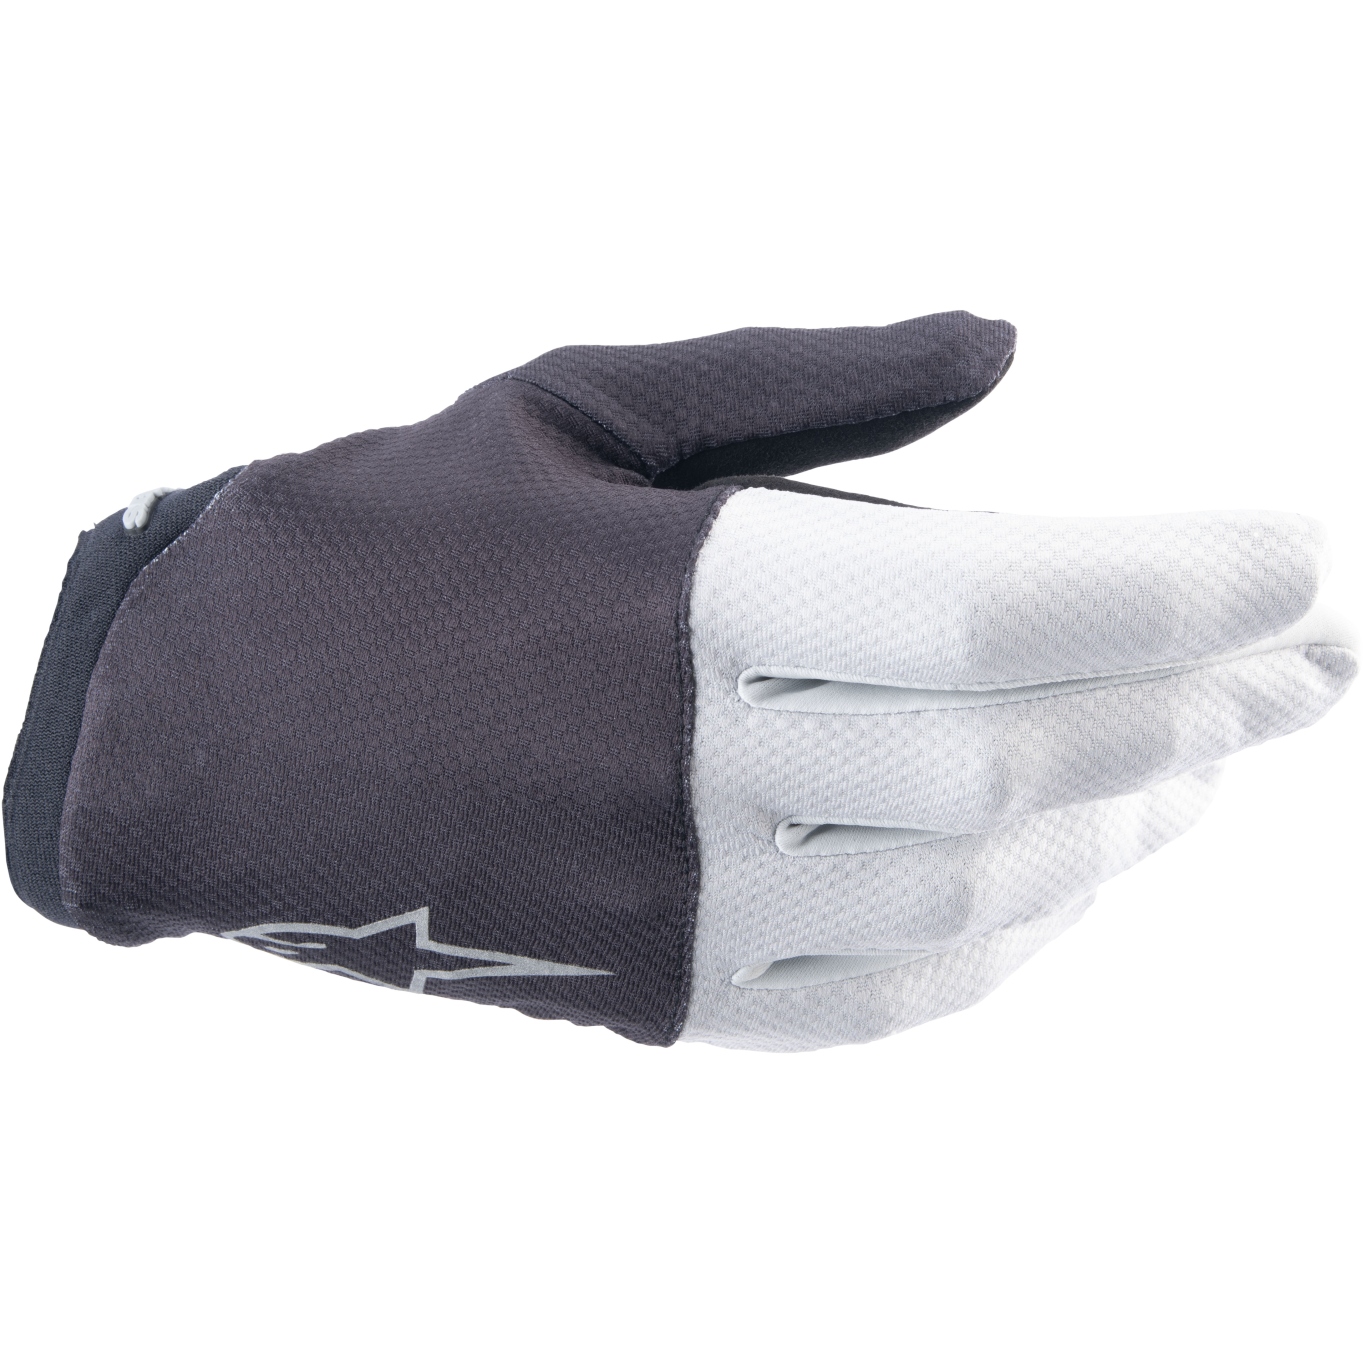 Produktbild von Alpinestars A-Aria Handschuhe - schwarz